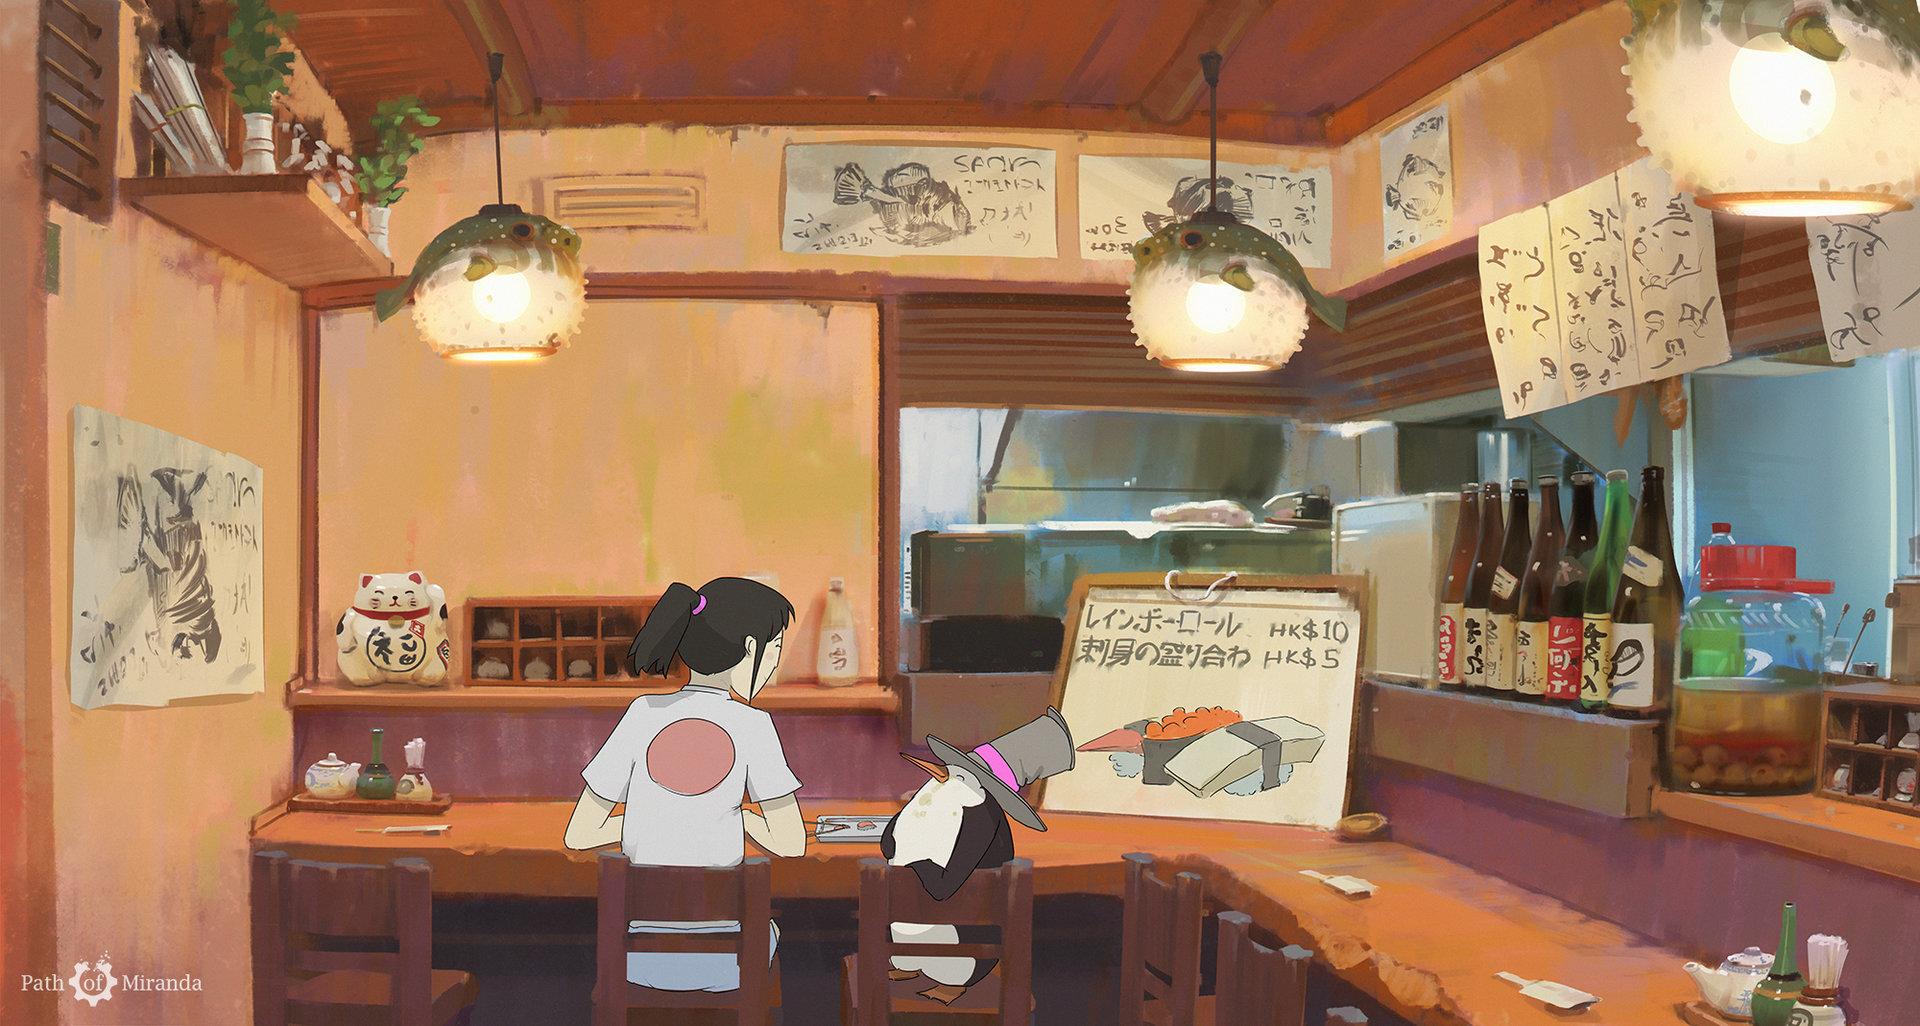 Anime Bar Wallpaper